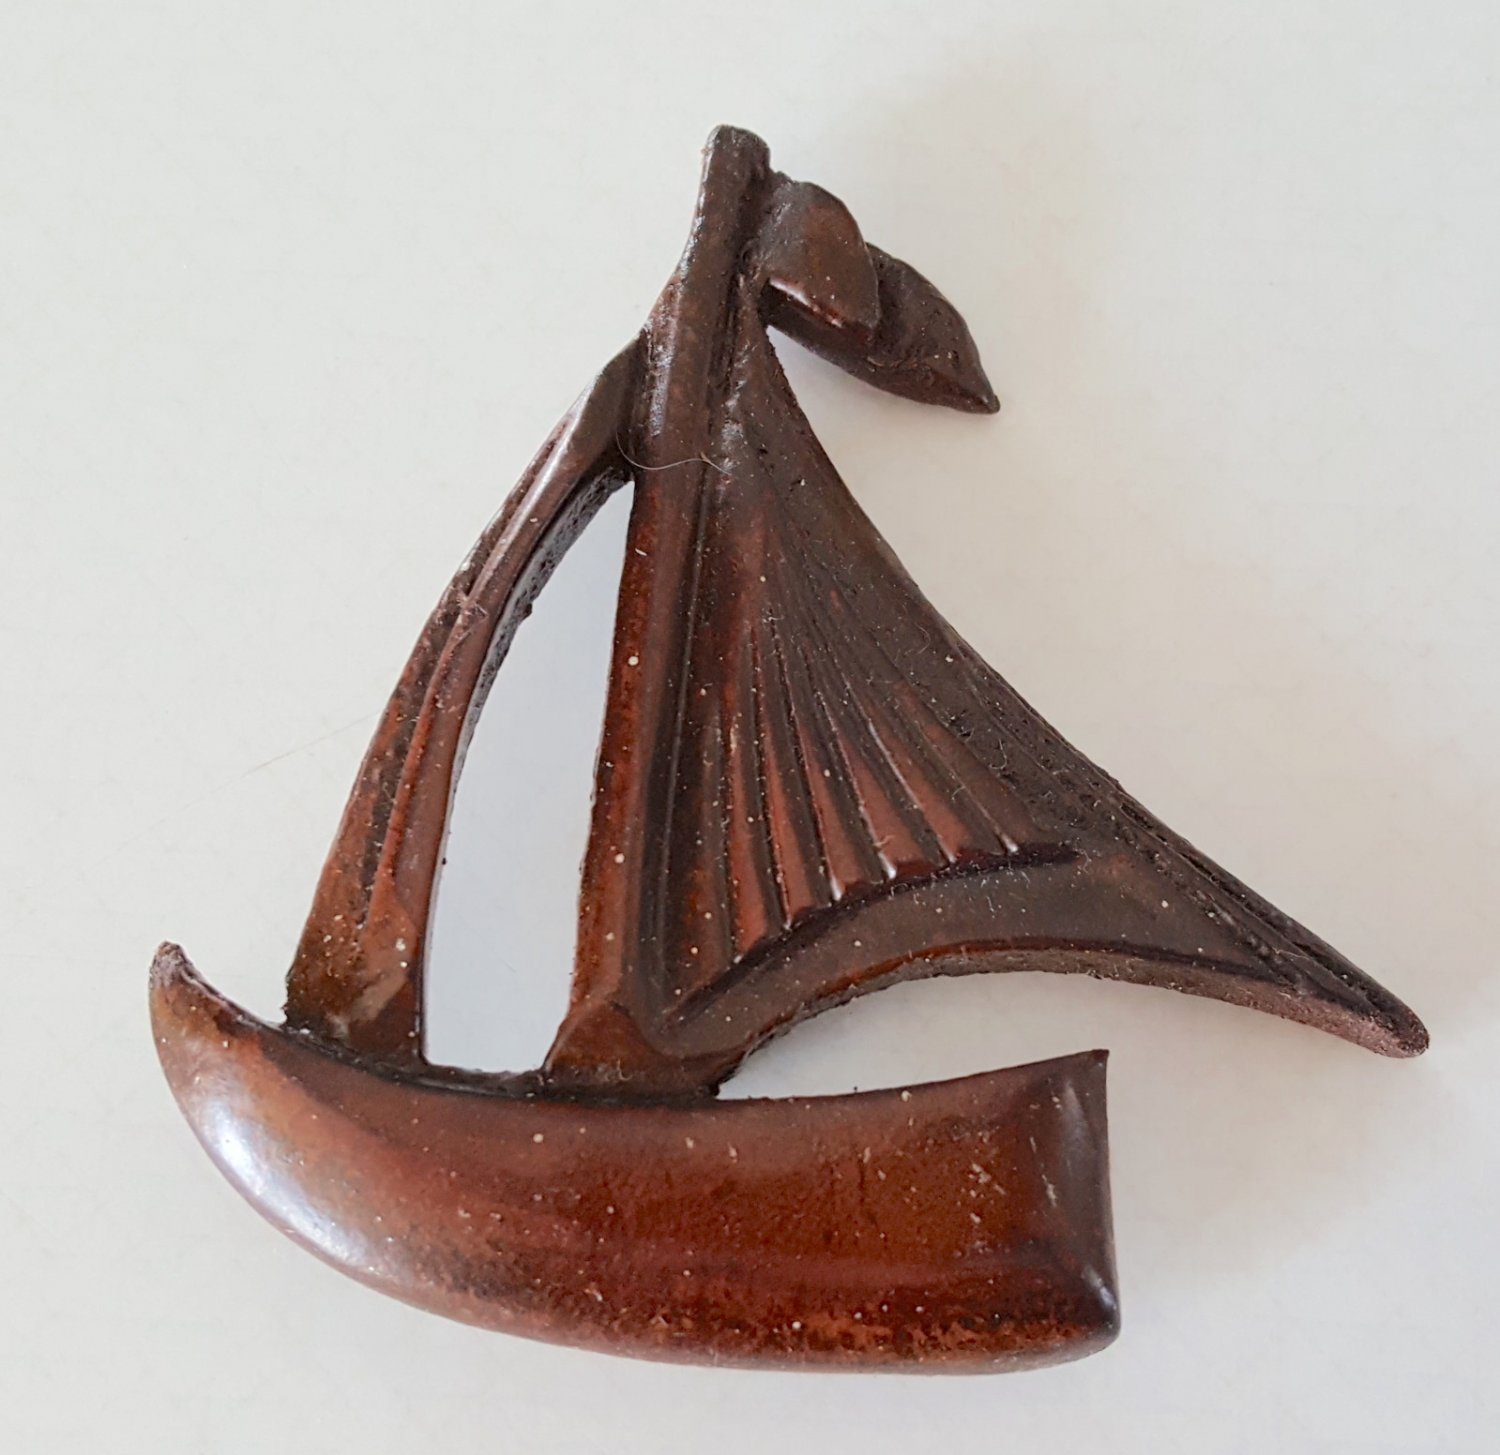 Vintage Carved Wood Look Sailboat Pin / Brooch - Japan